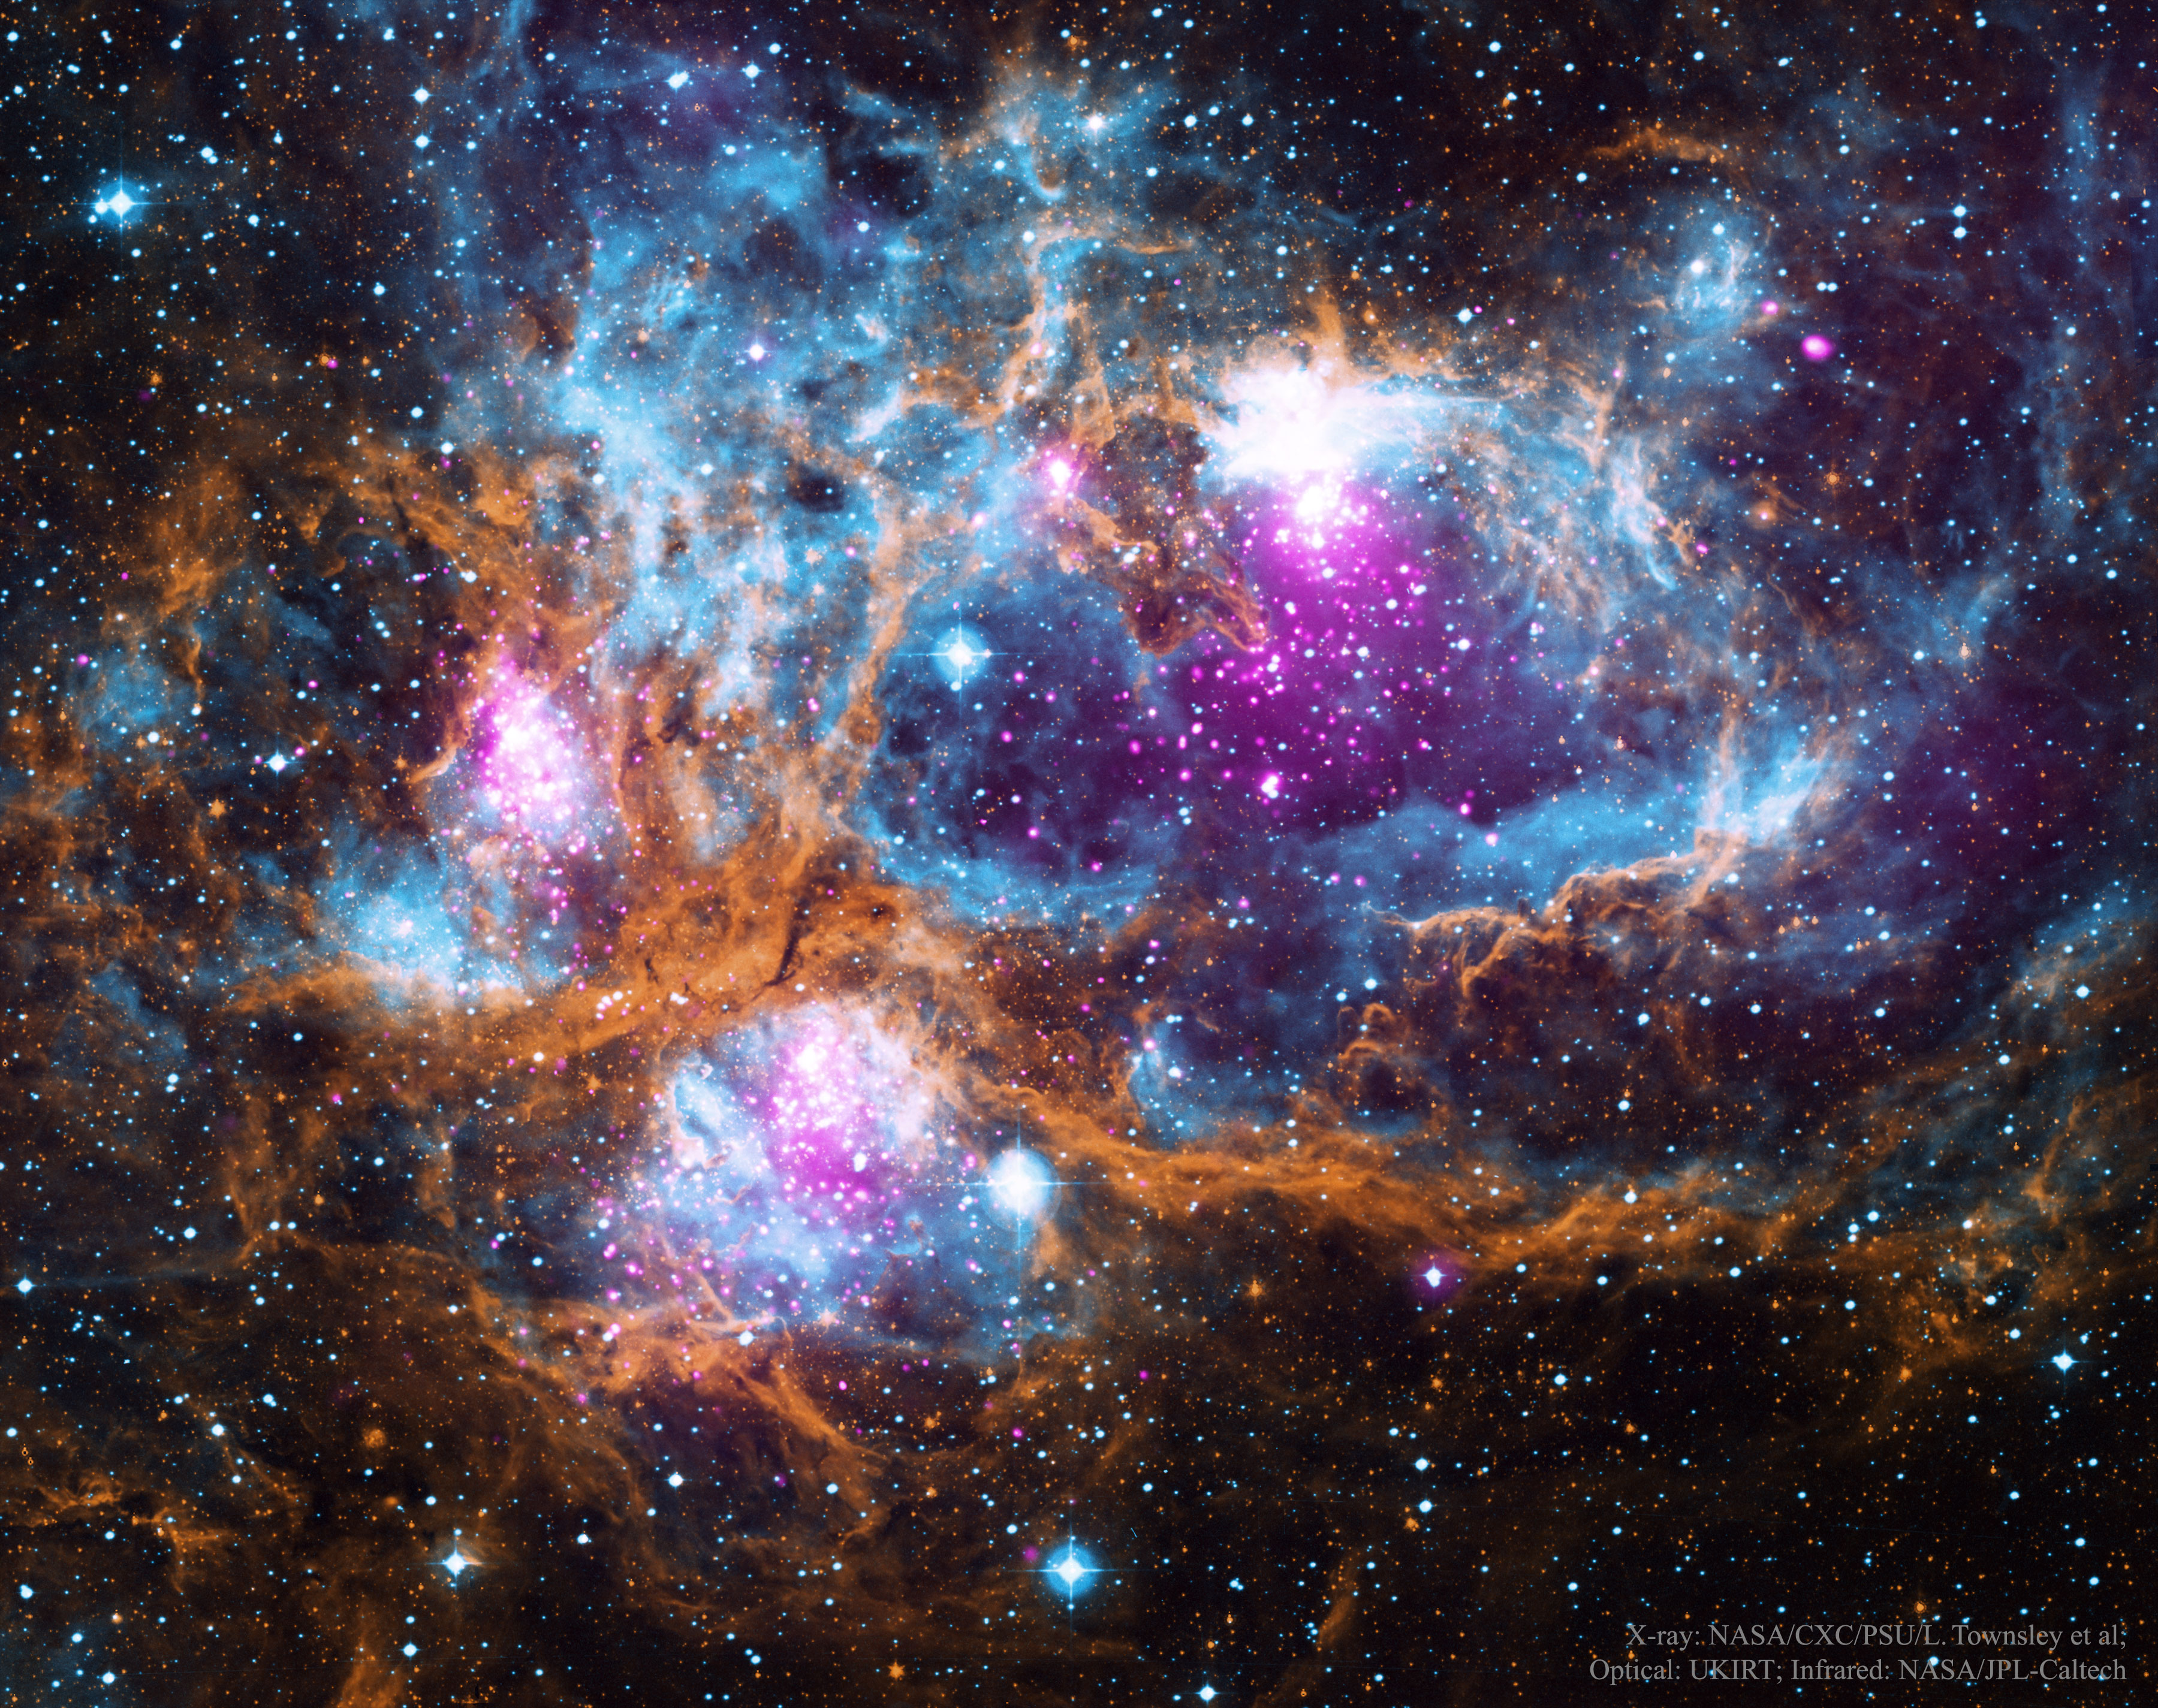 NGC 6357, le Pays des Merveilles